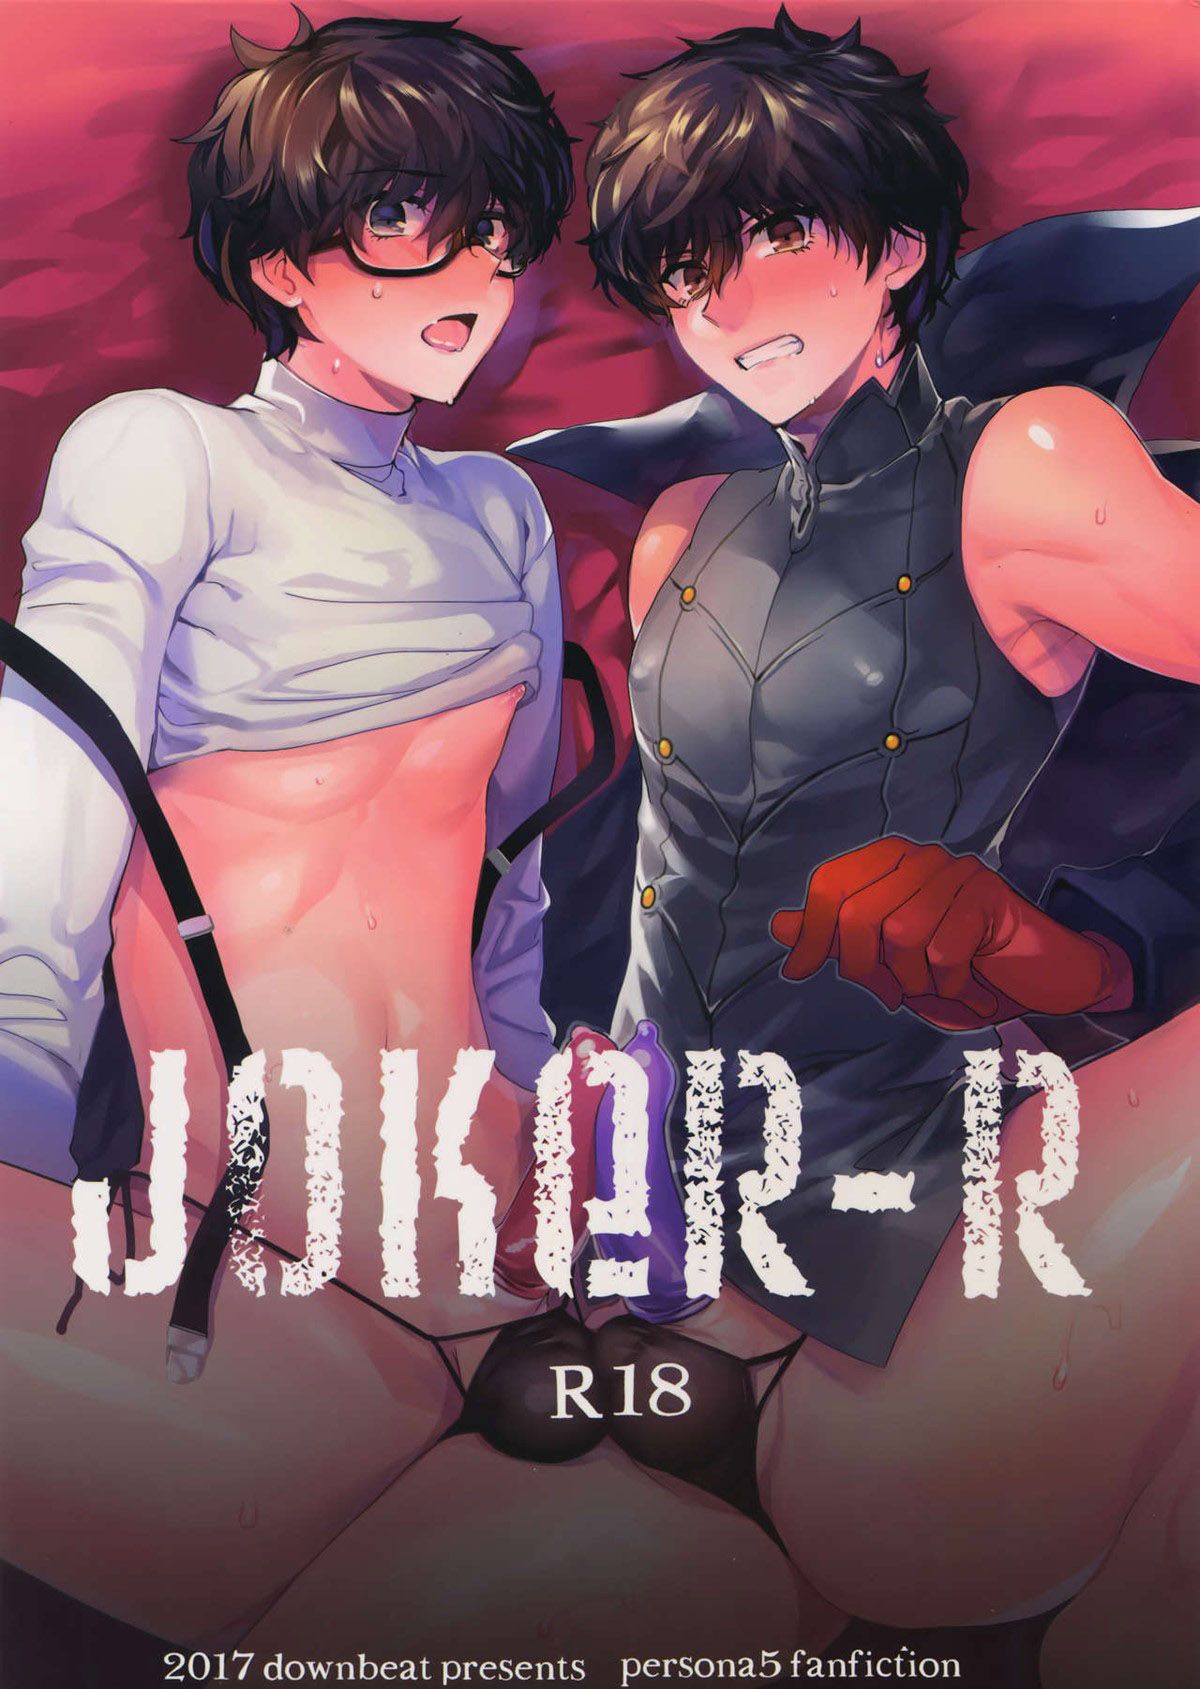 Joker-R